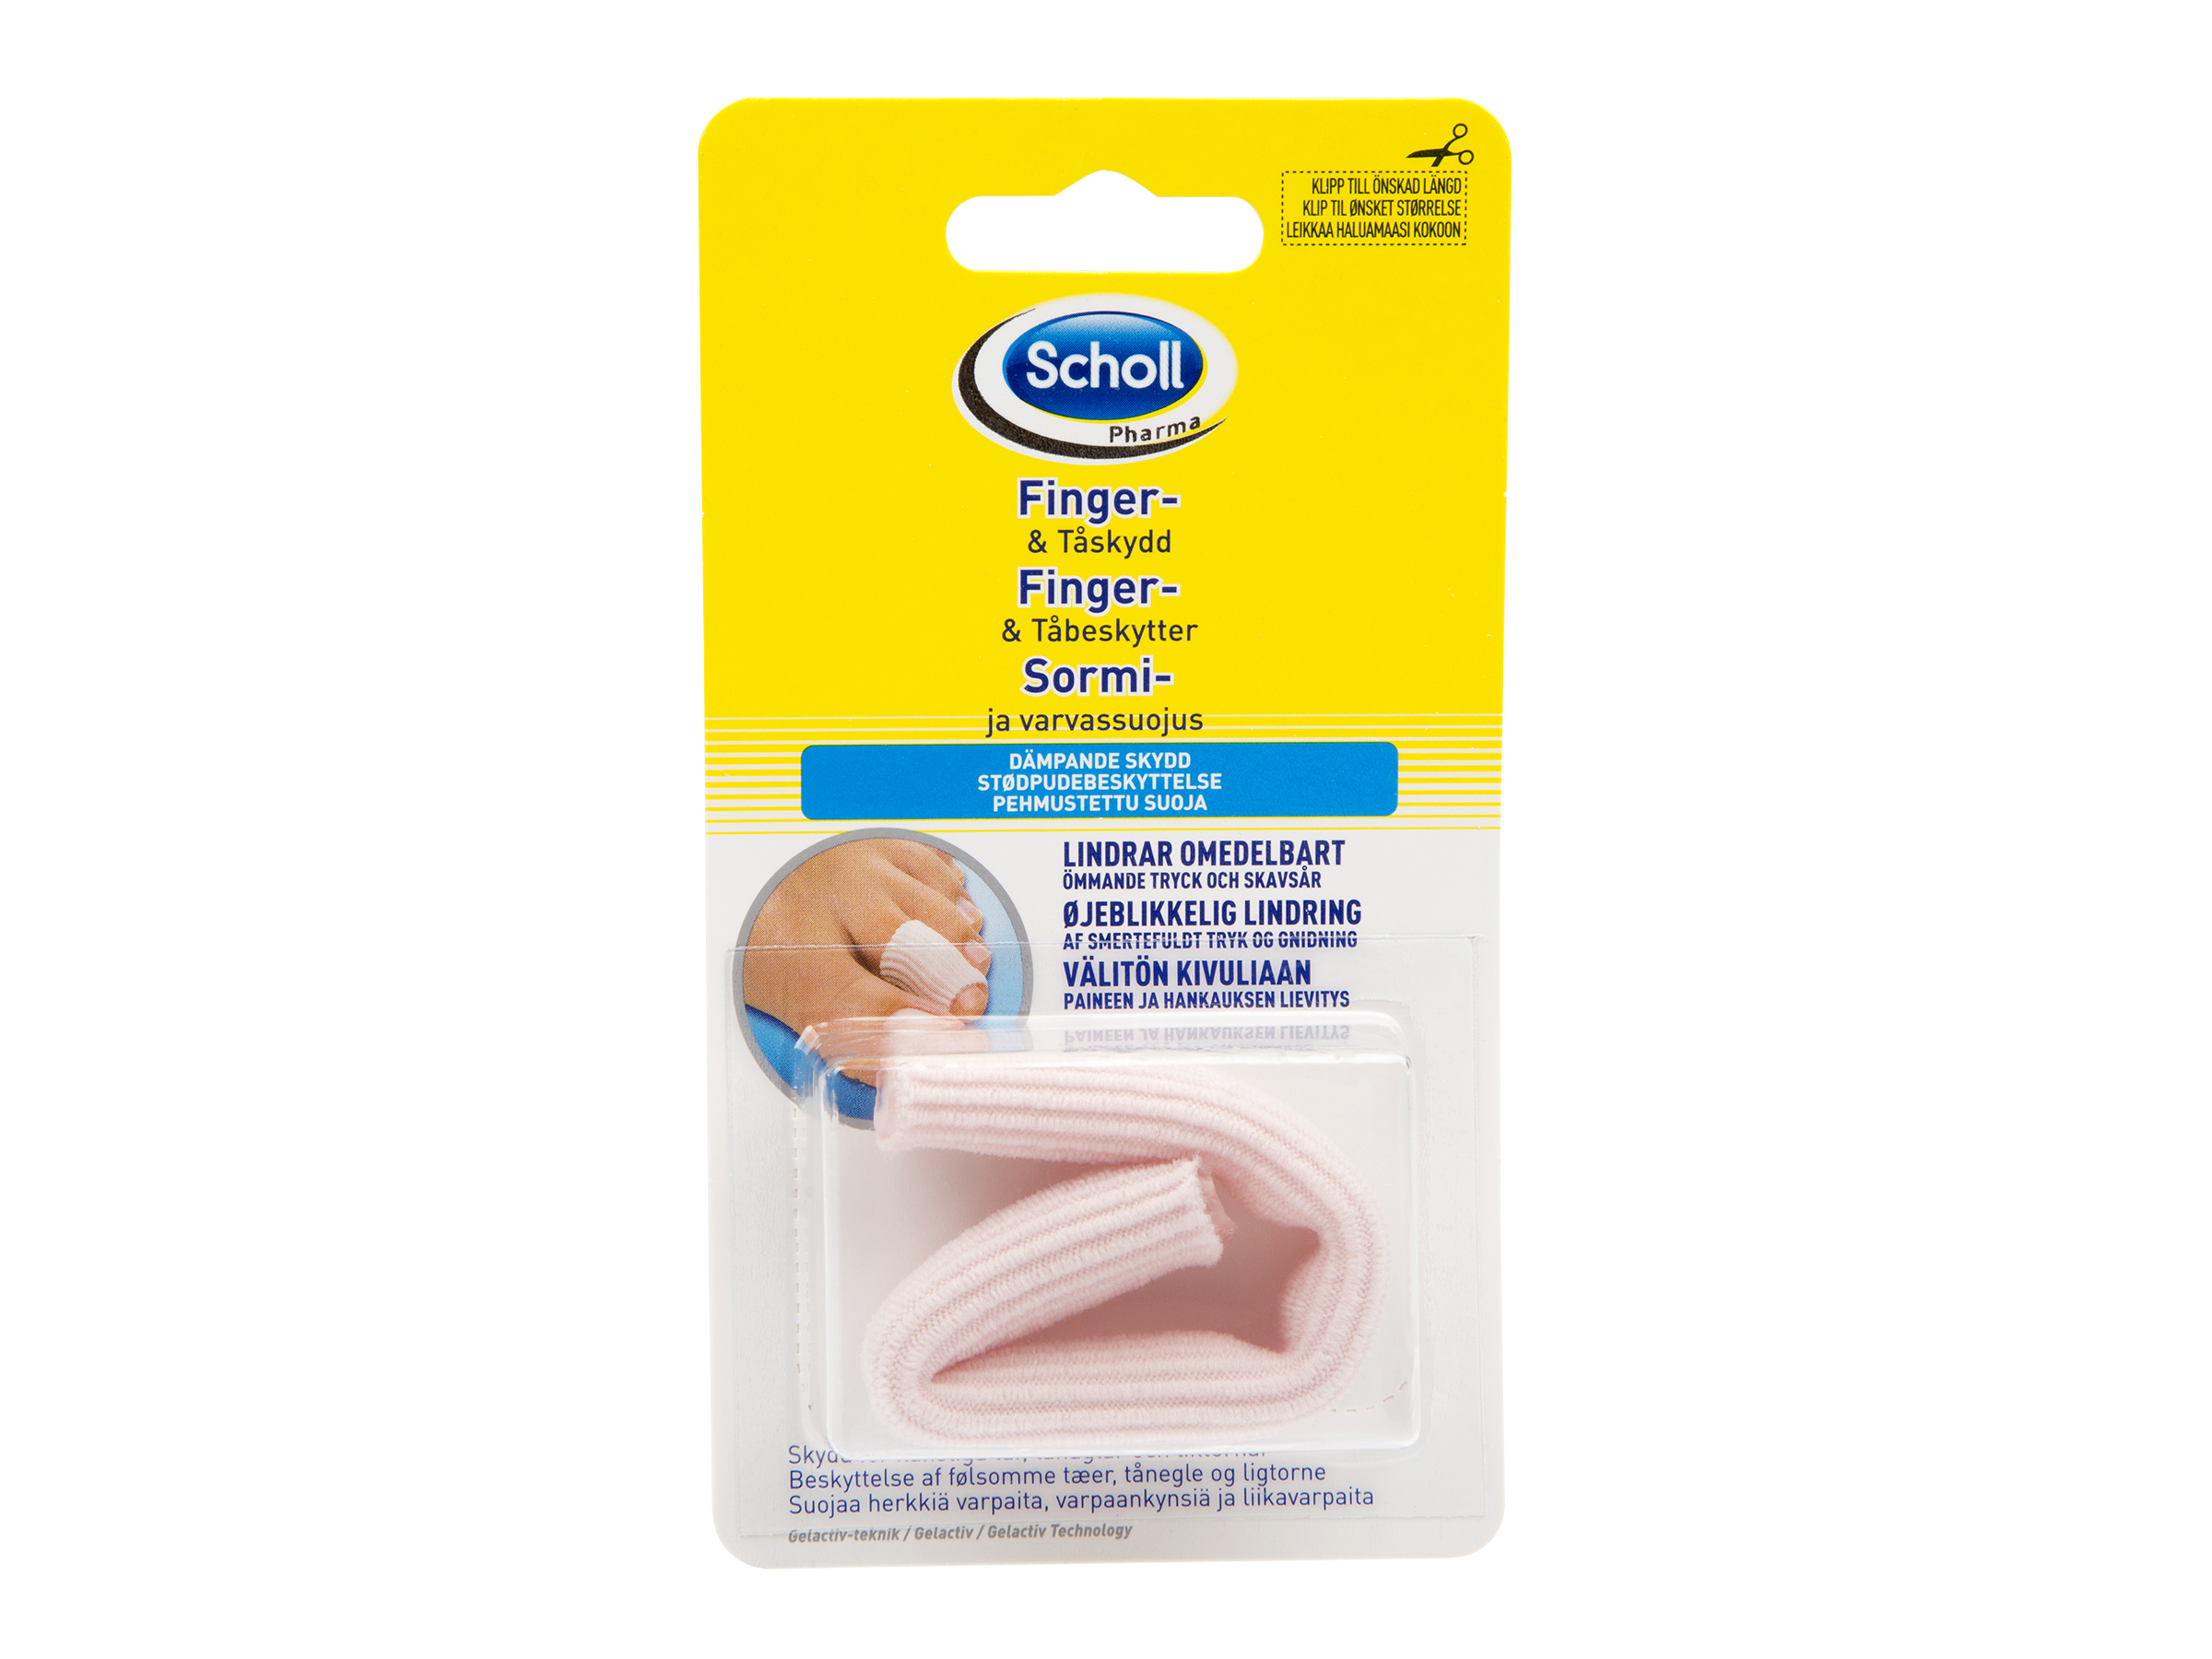 Scholl Pharma finger- og tåbeskytter, 1 stk.